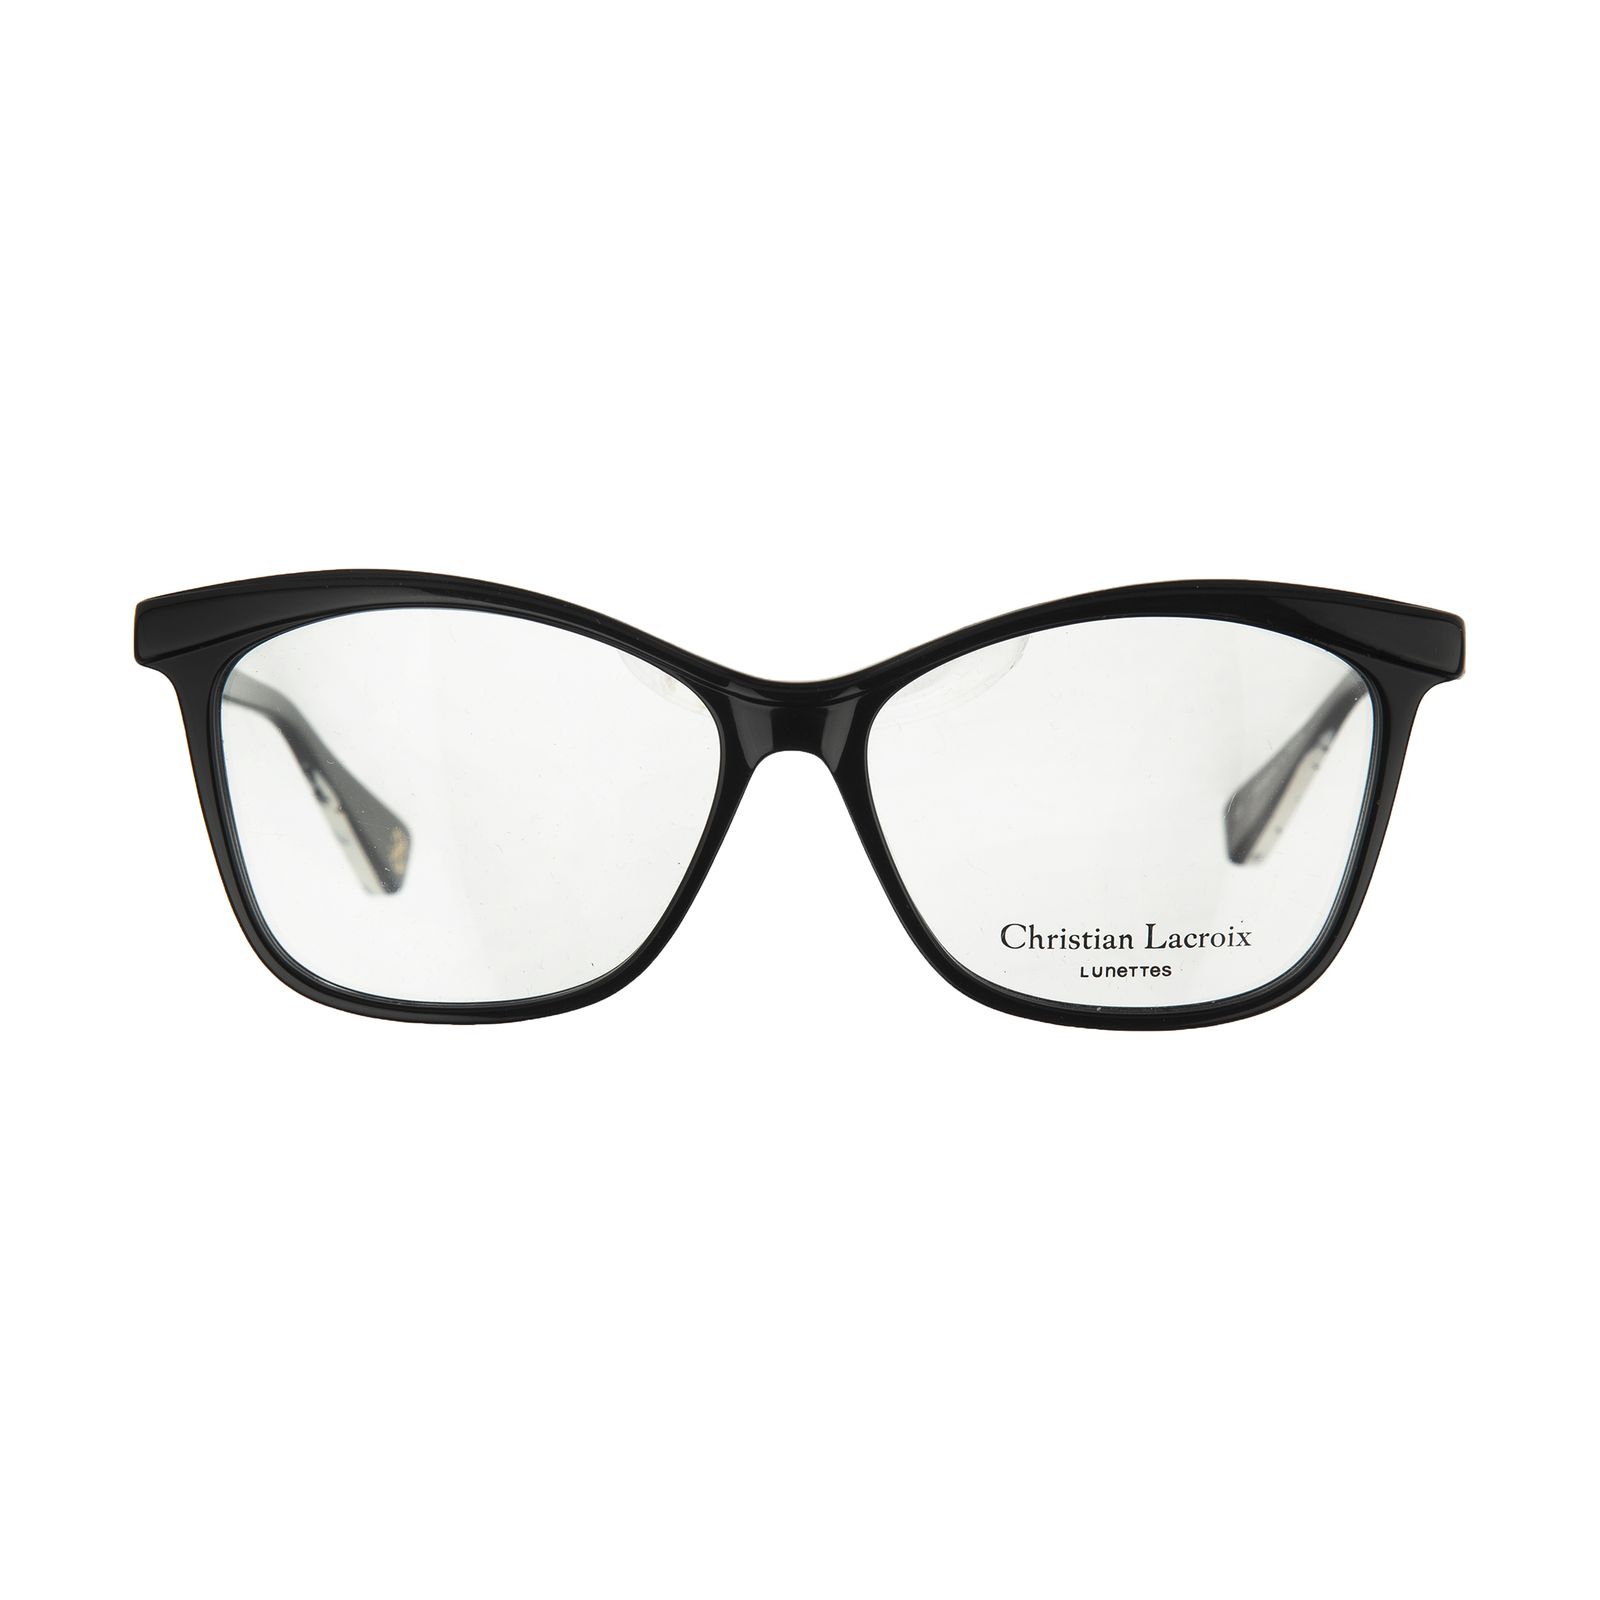 عینک طبی زنانه کریستین لاکروآ مدل CL 1070 001 -  - 1